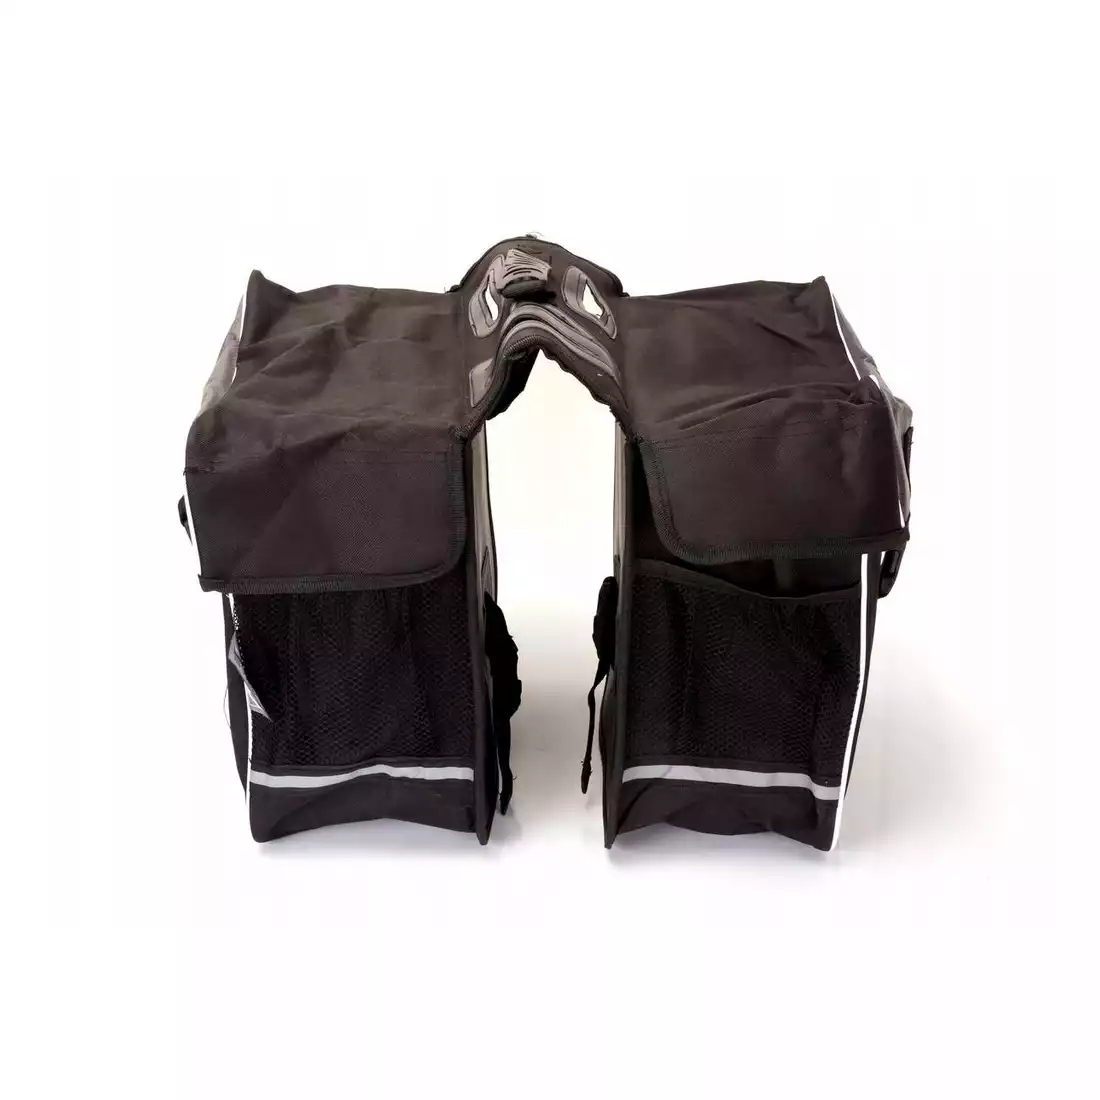 M-WAVE sacoș de bicicletă pentru portbagaj, negru